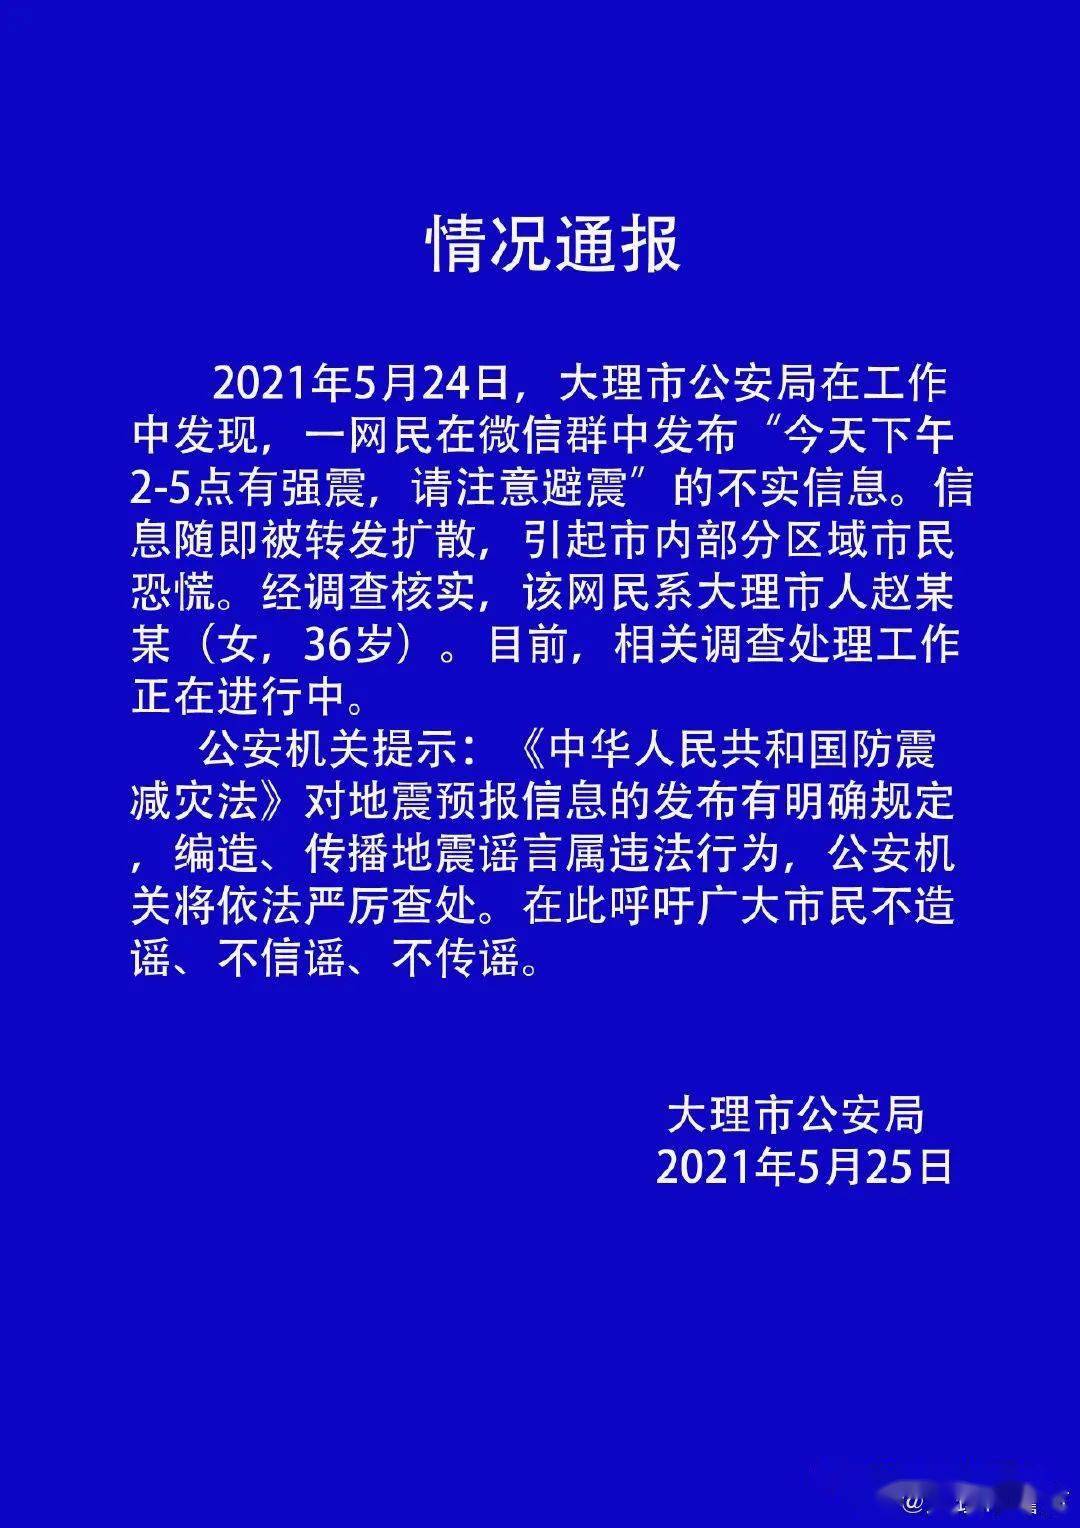 针对网传大理下关5月24日下午将发生大地震的谣言,云南省地震局高级